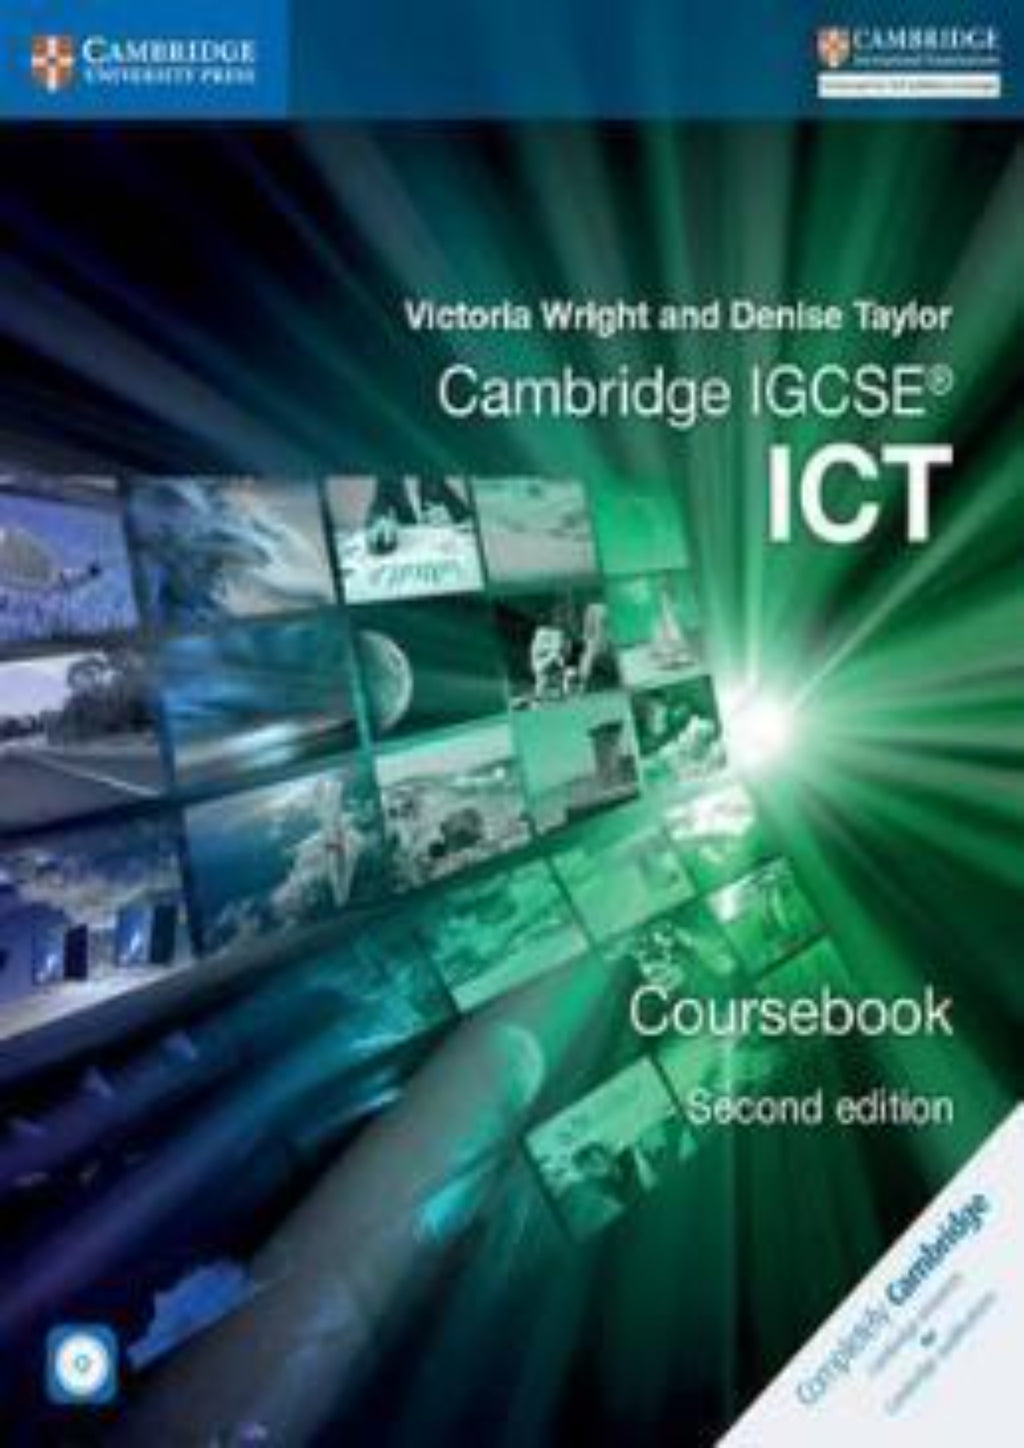 Cambridge IGCSE ICT (0417) Coursebook